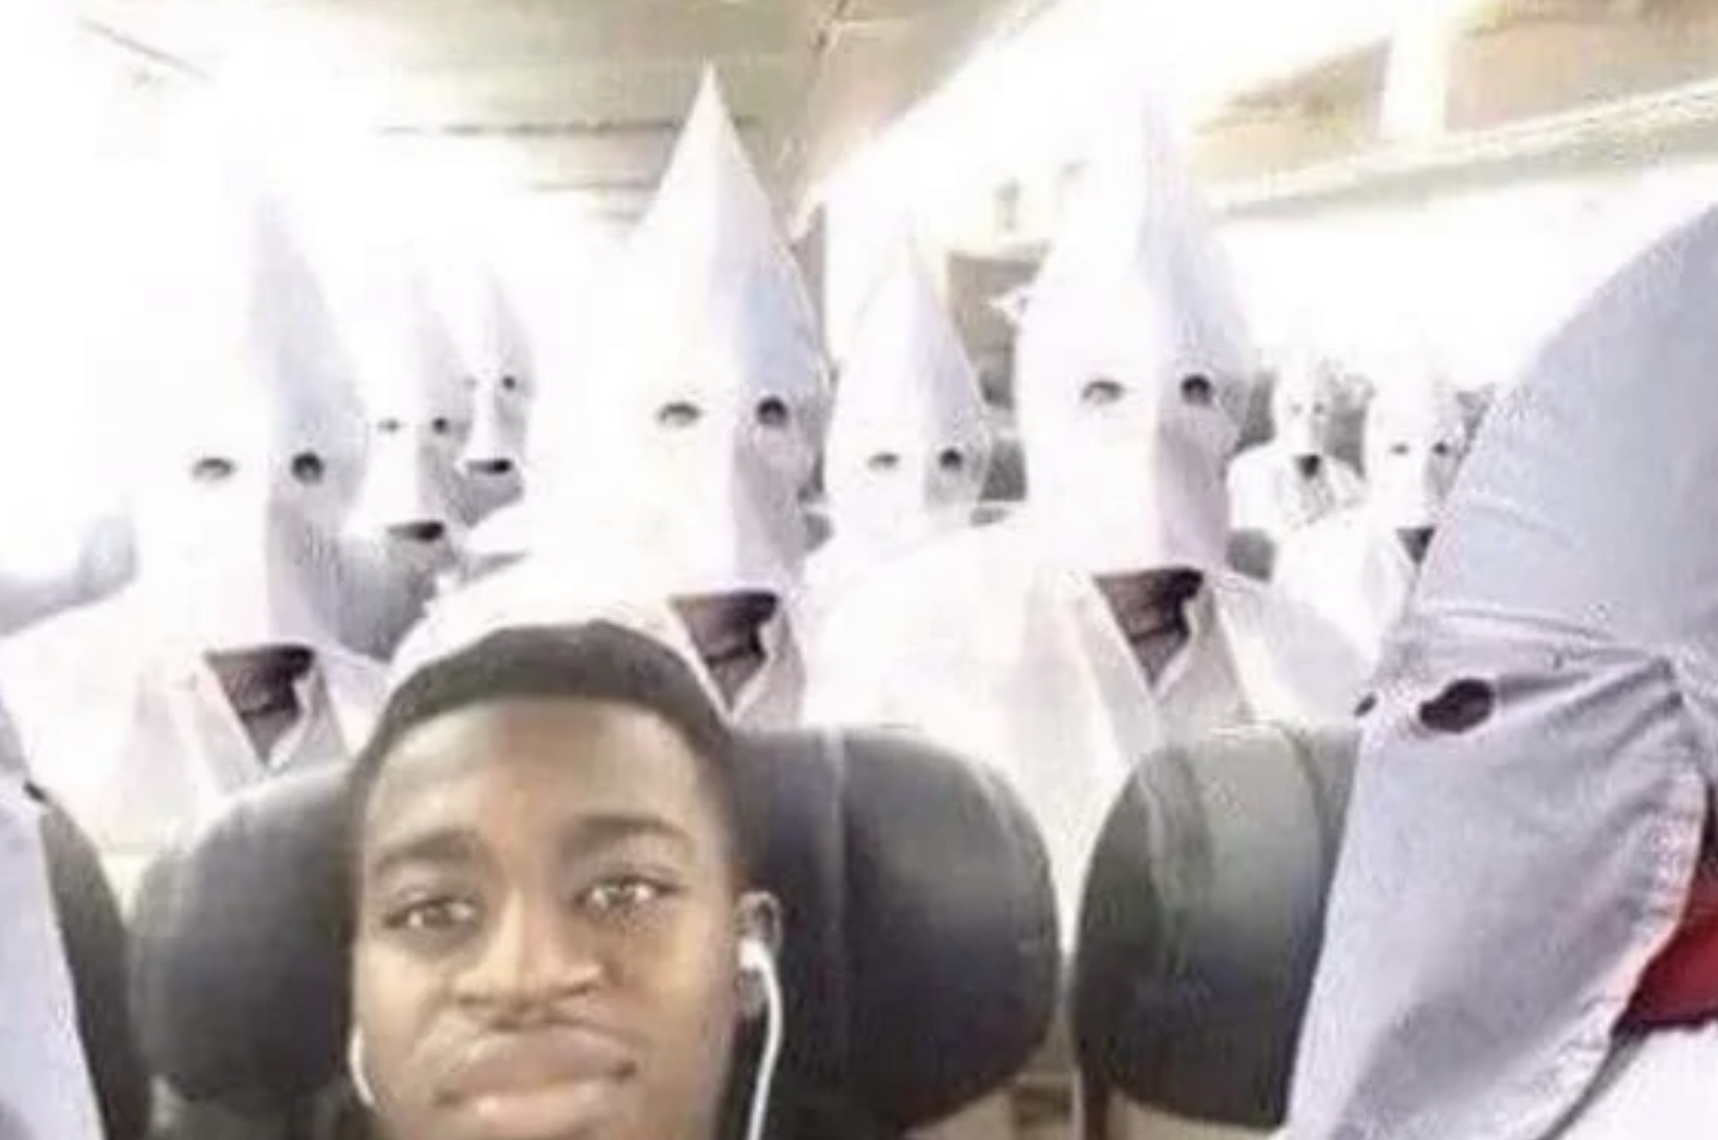 High Quality Black guy on kkk flight Blank Meme Template